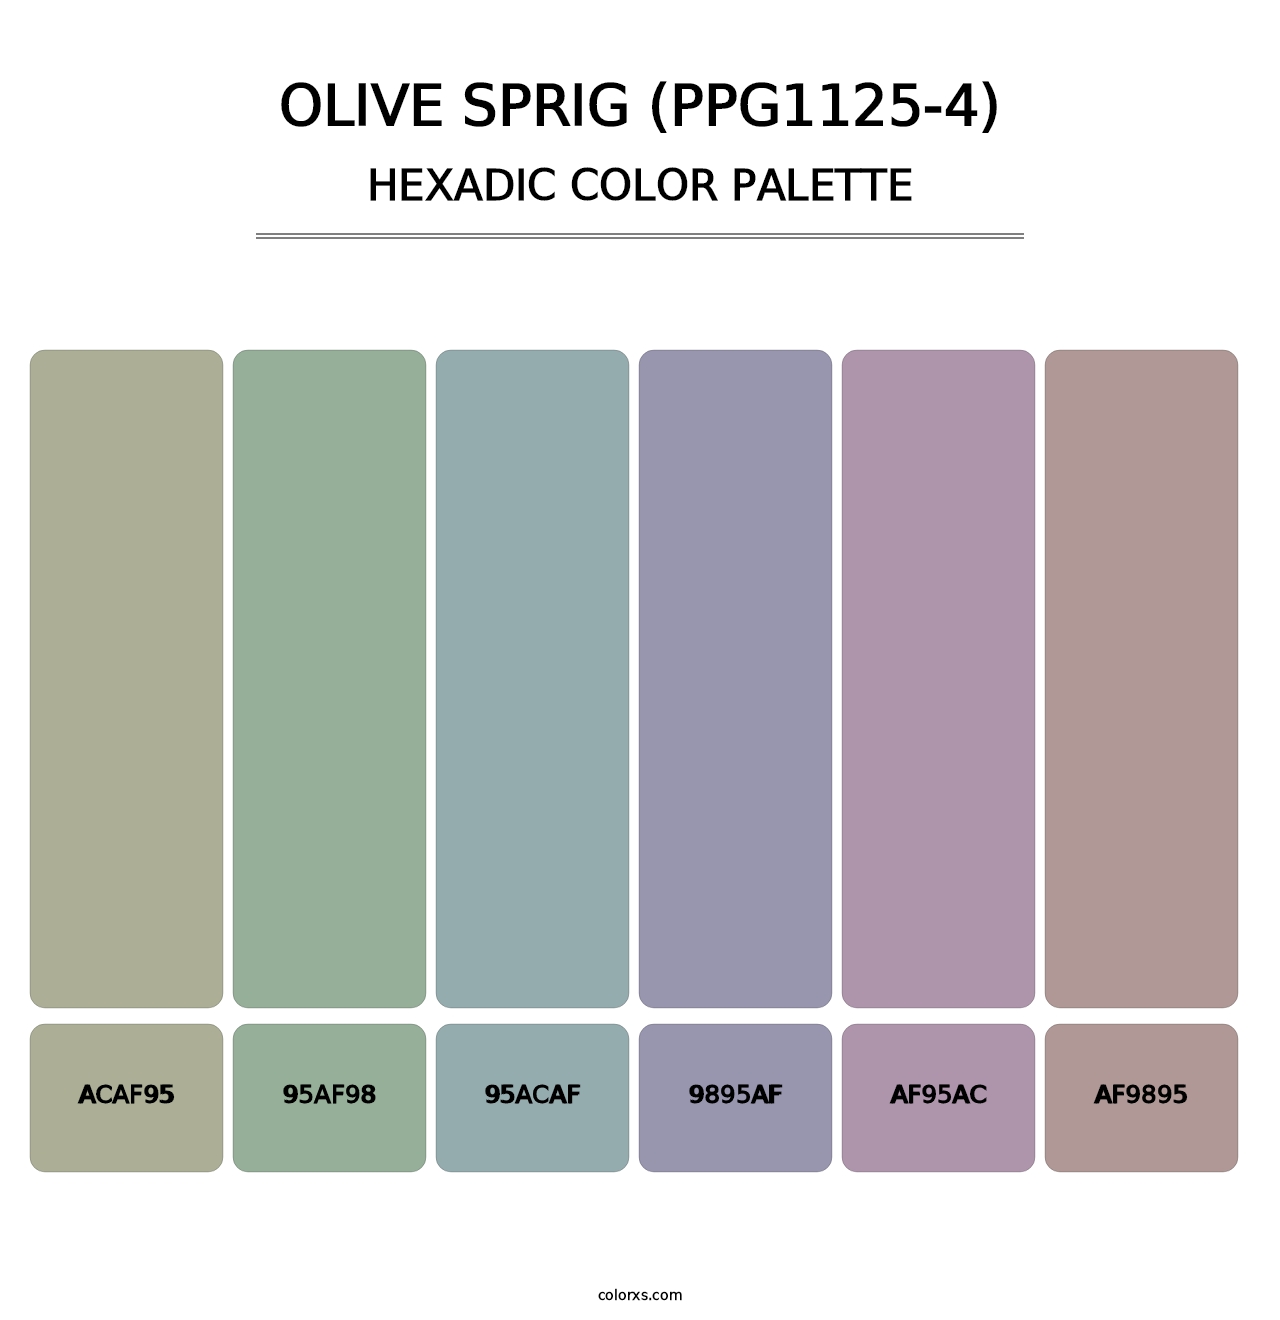 Olive Sprig (PPG1125-4) - Hexadic Color Palette